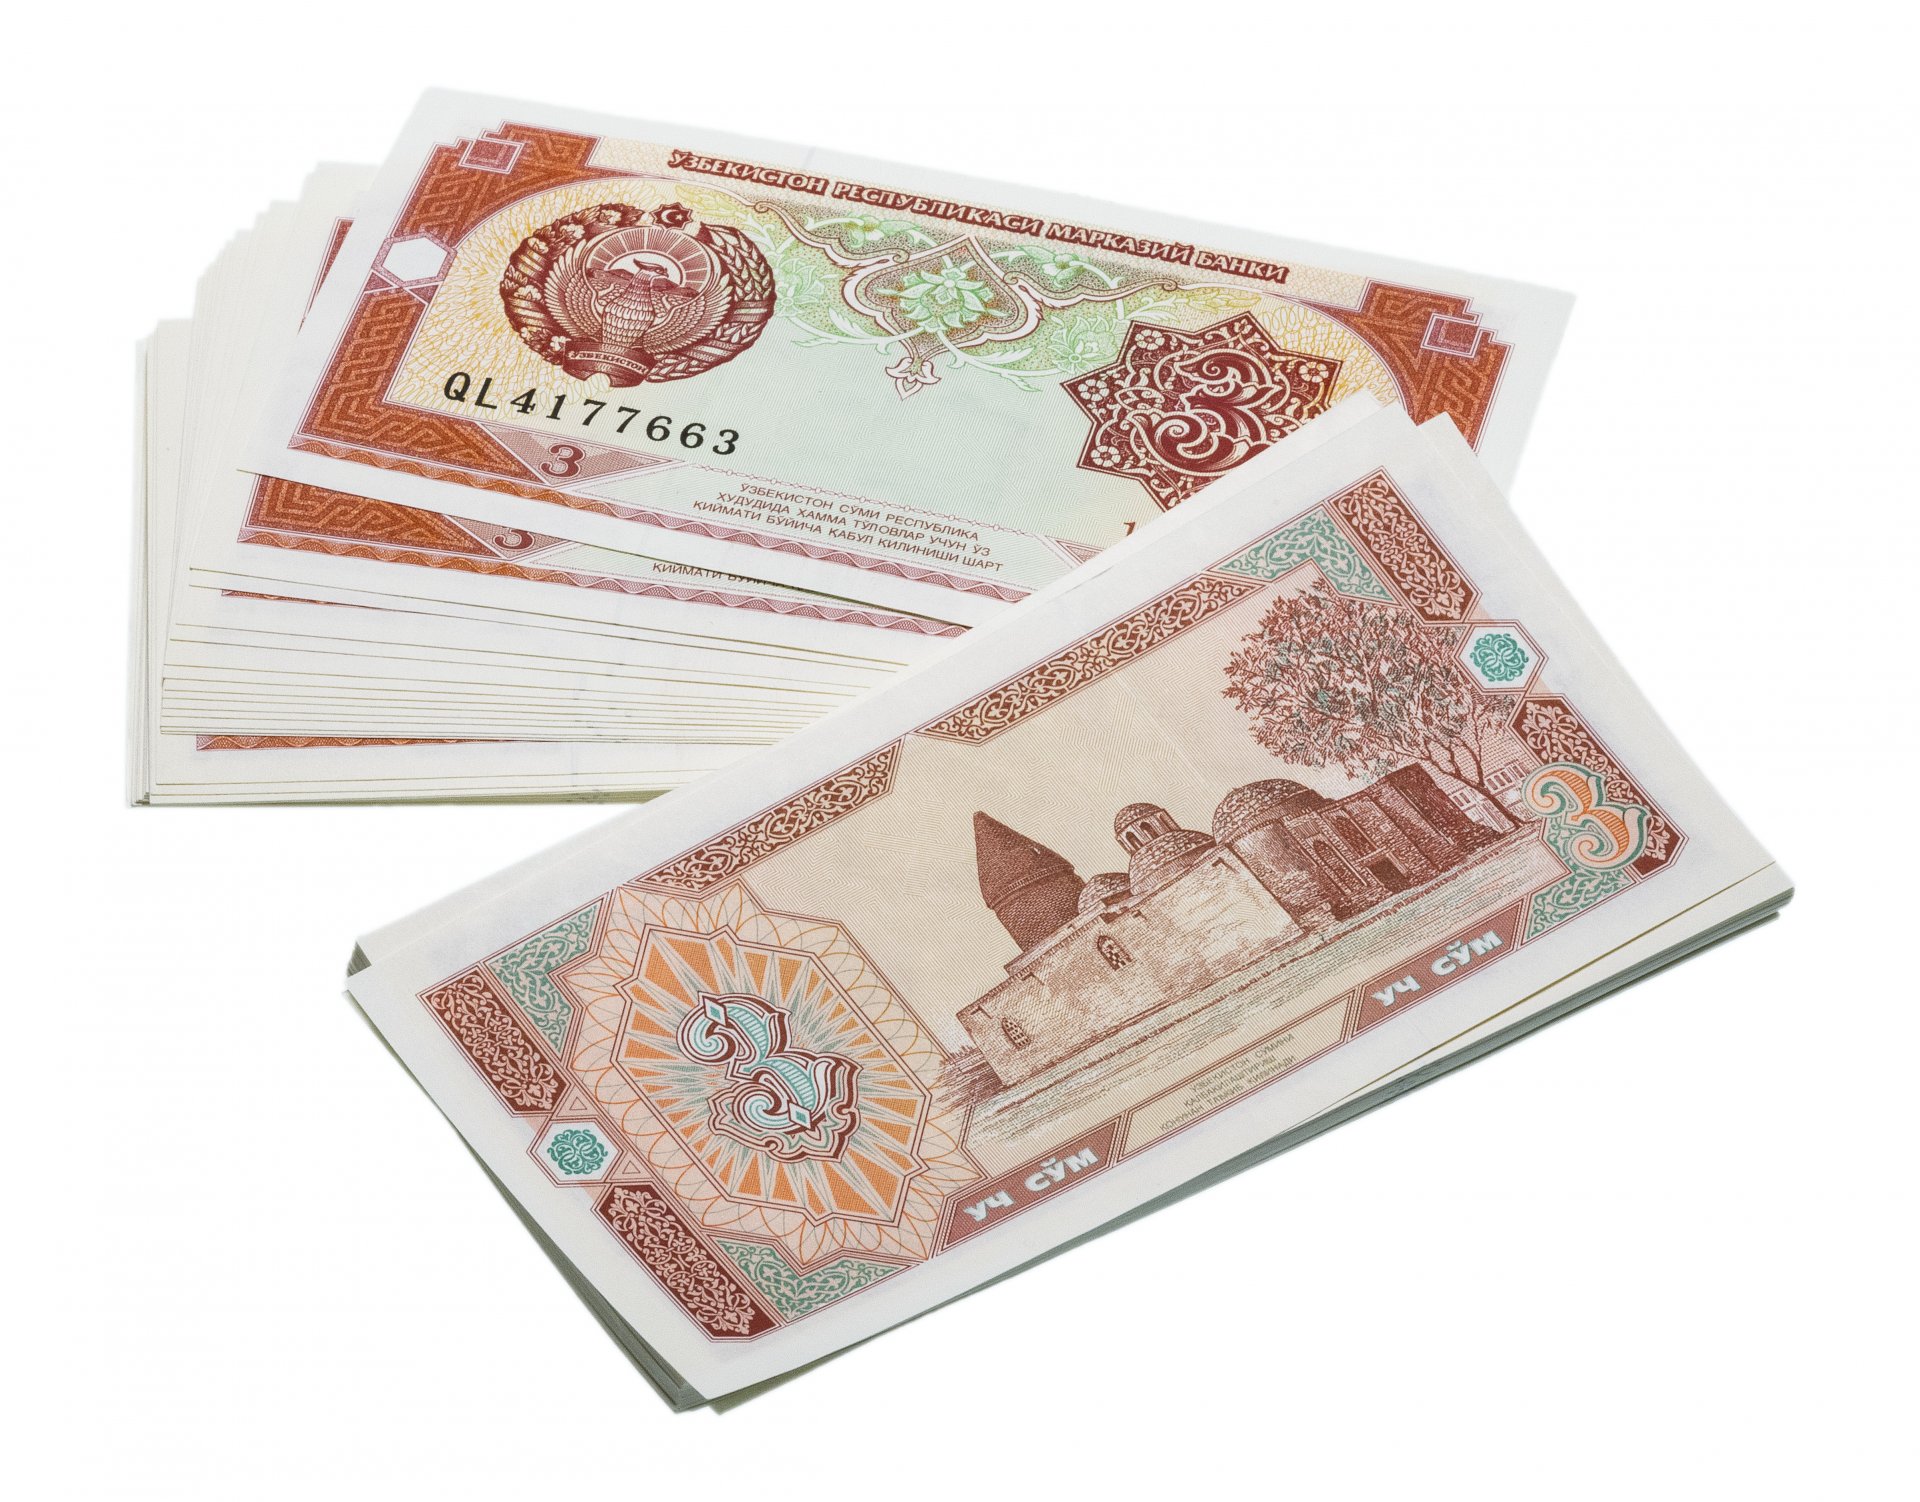 Узбекистан валюта сум. 200000 Сум Узбекистан. Сум купюра. Деньги Узбекистана. Банкнота Узбекистан.